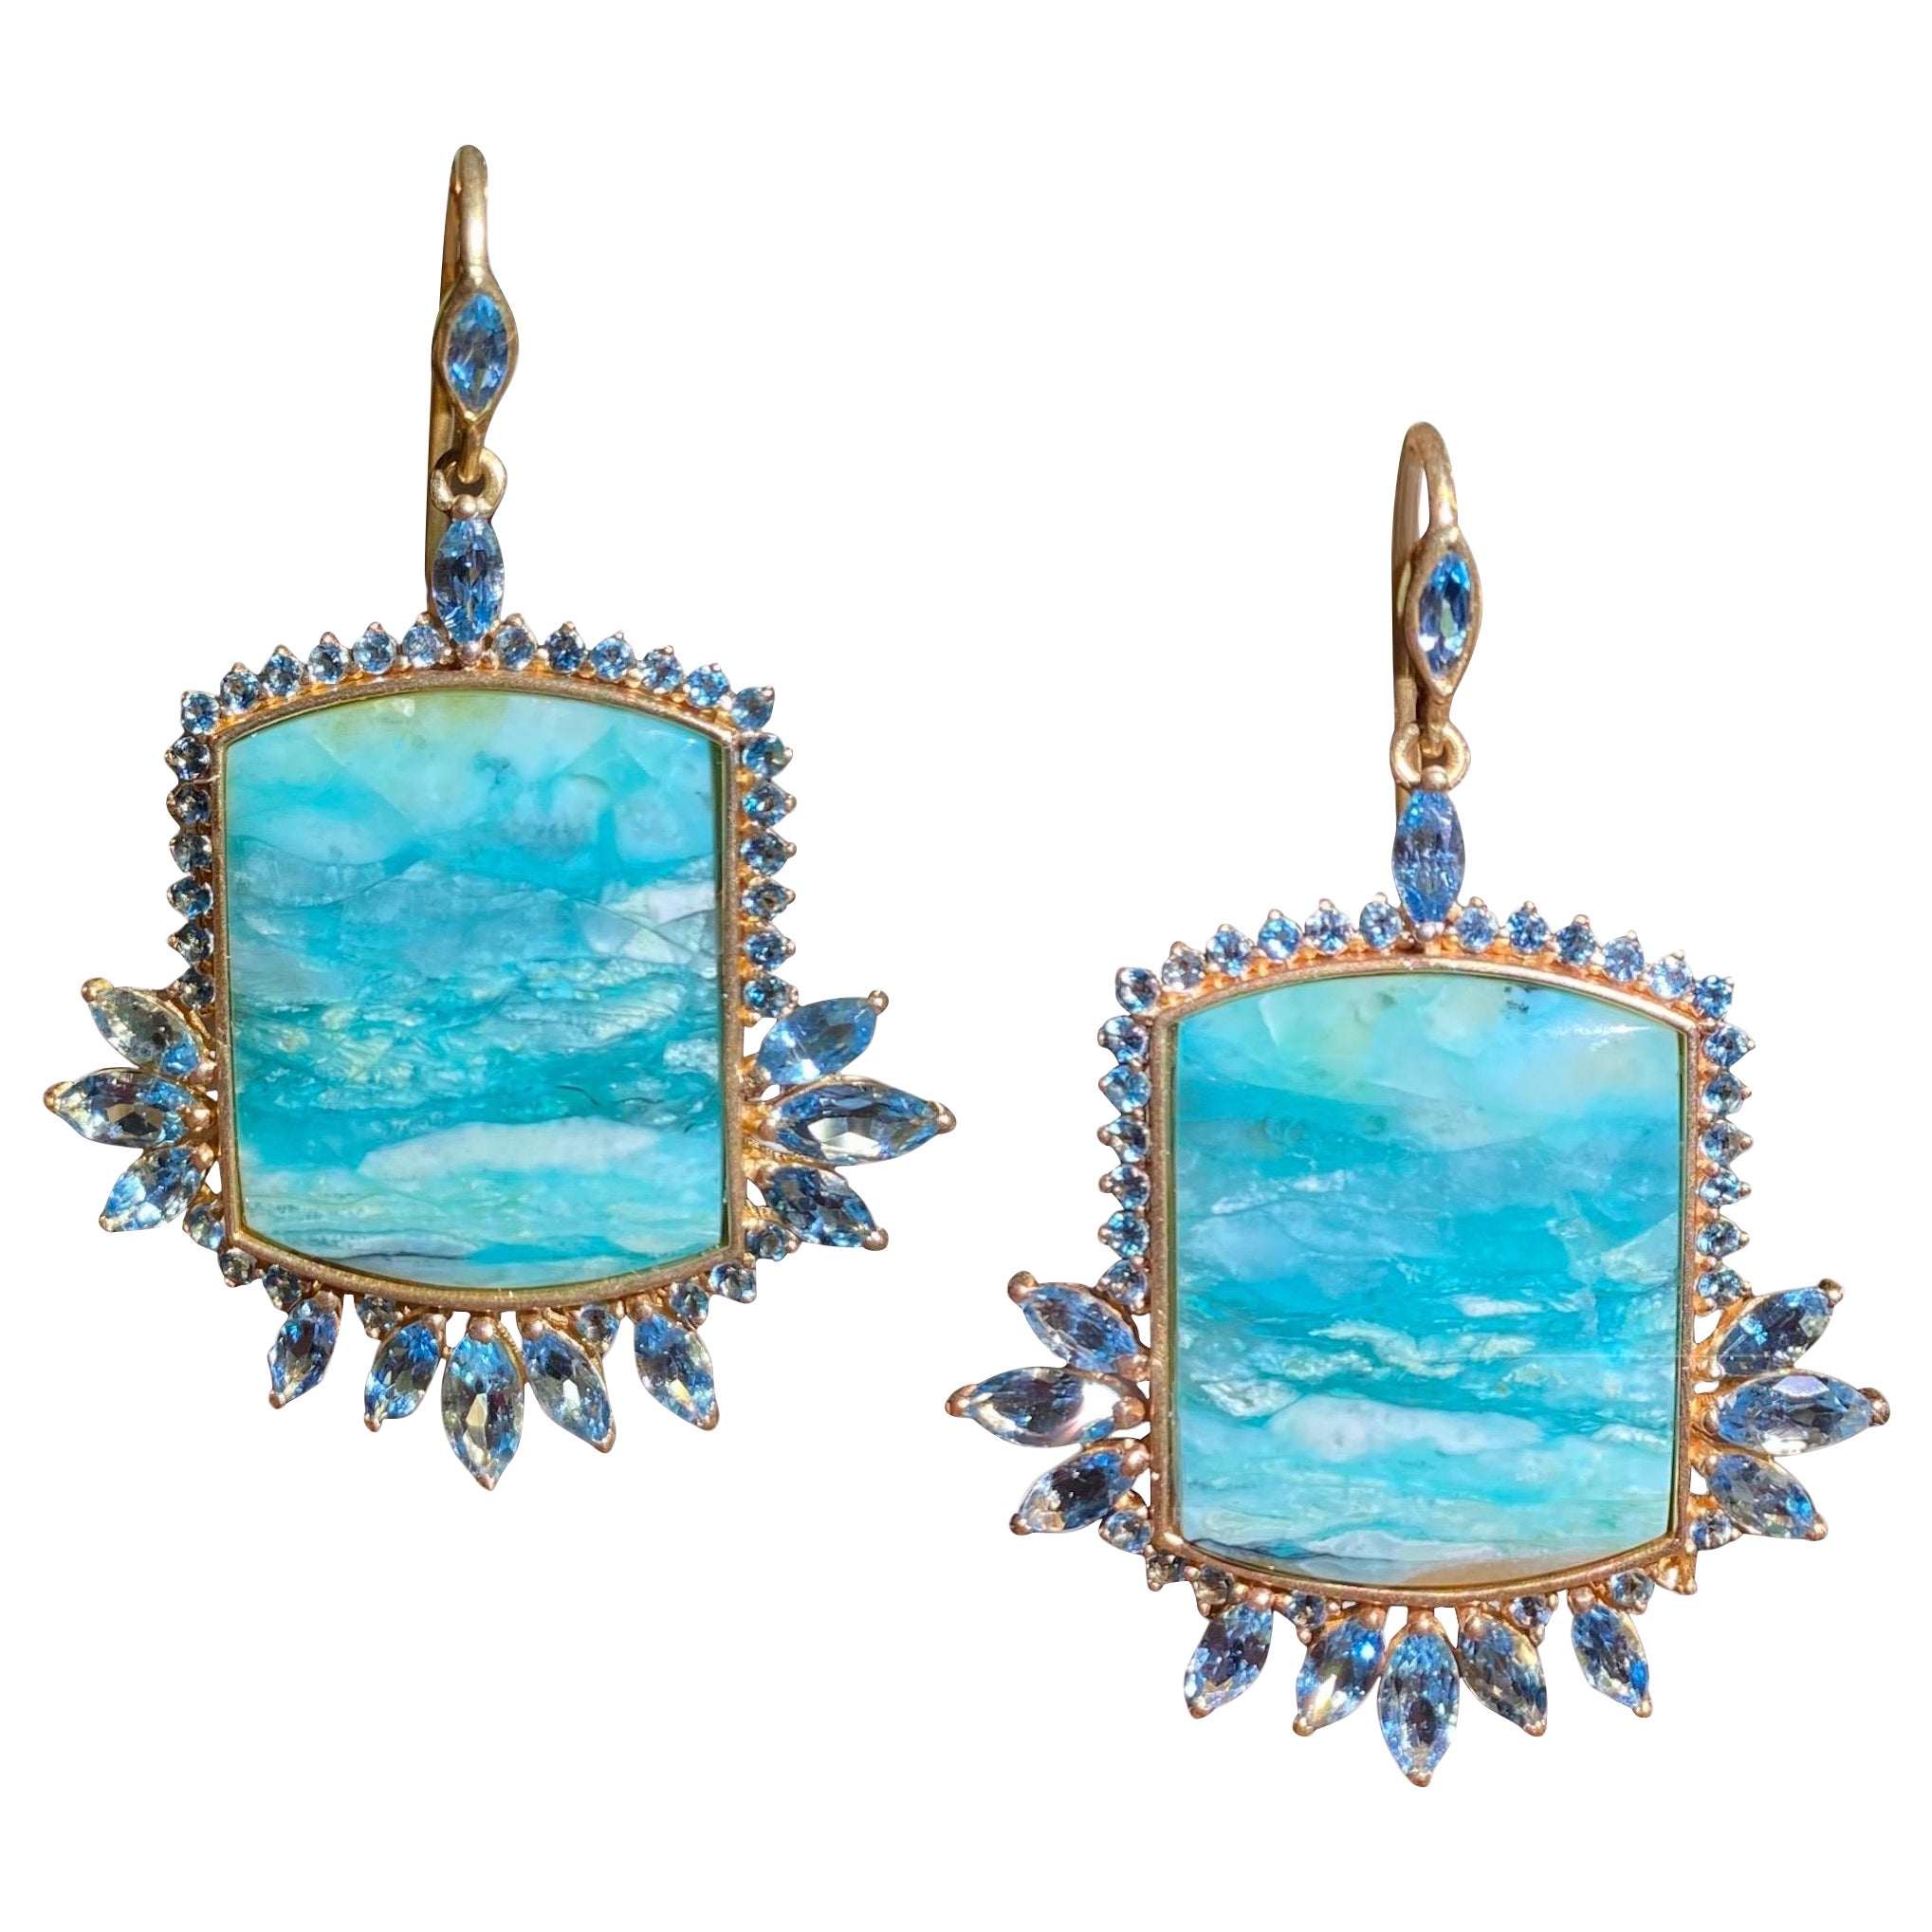 Aquamarine, Opalized Wood, 18kt Gold Earrings by Lauren Harper